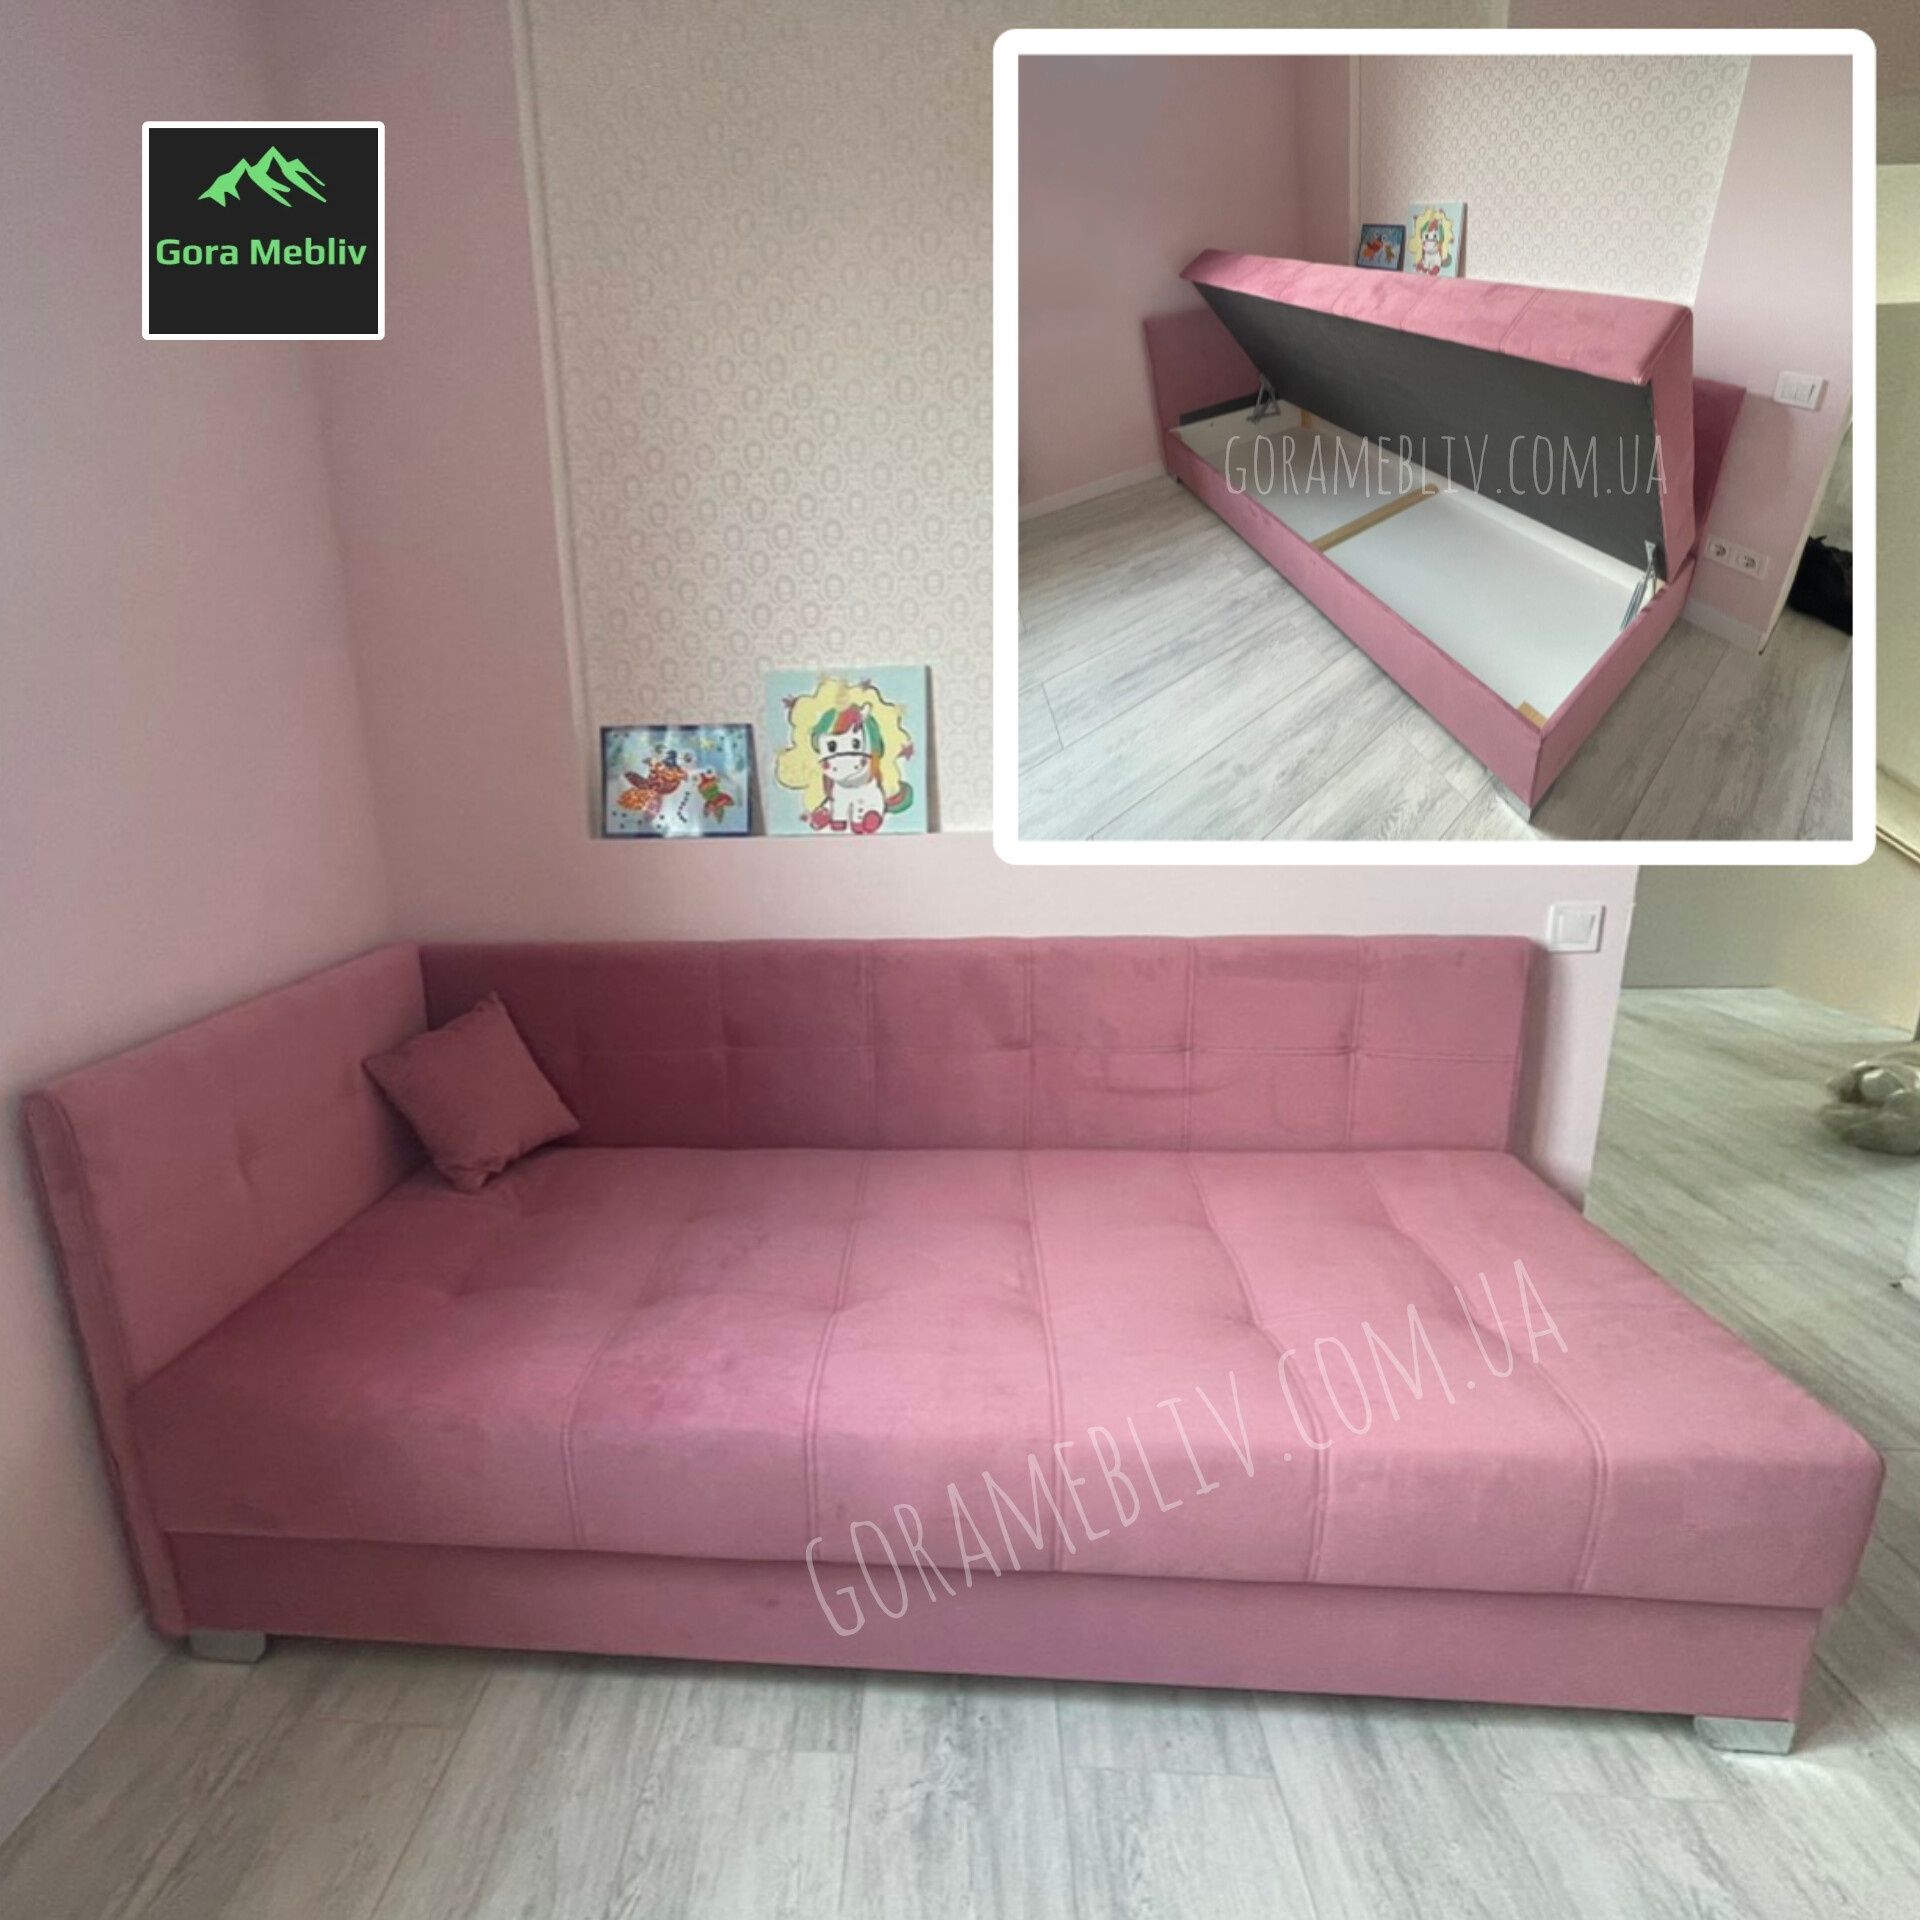 Ліжко-диван "Квадро" для дітей